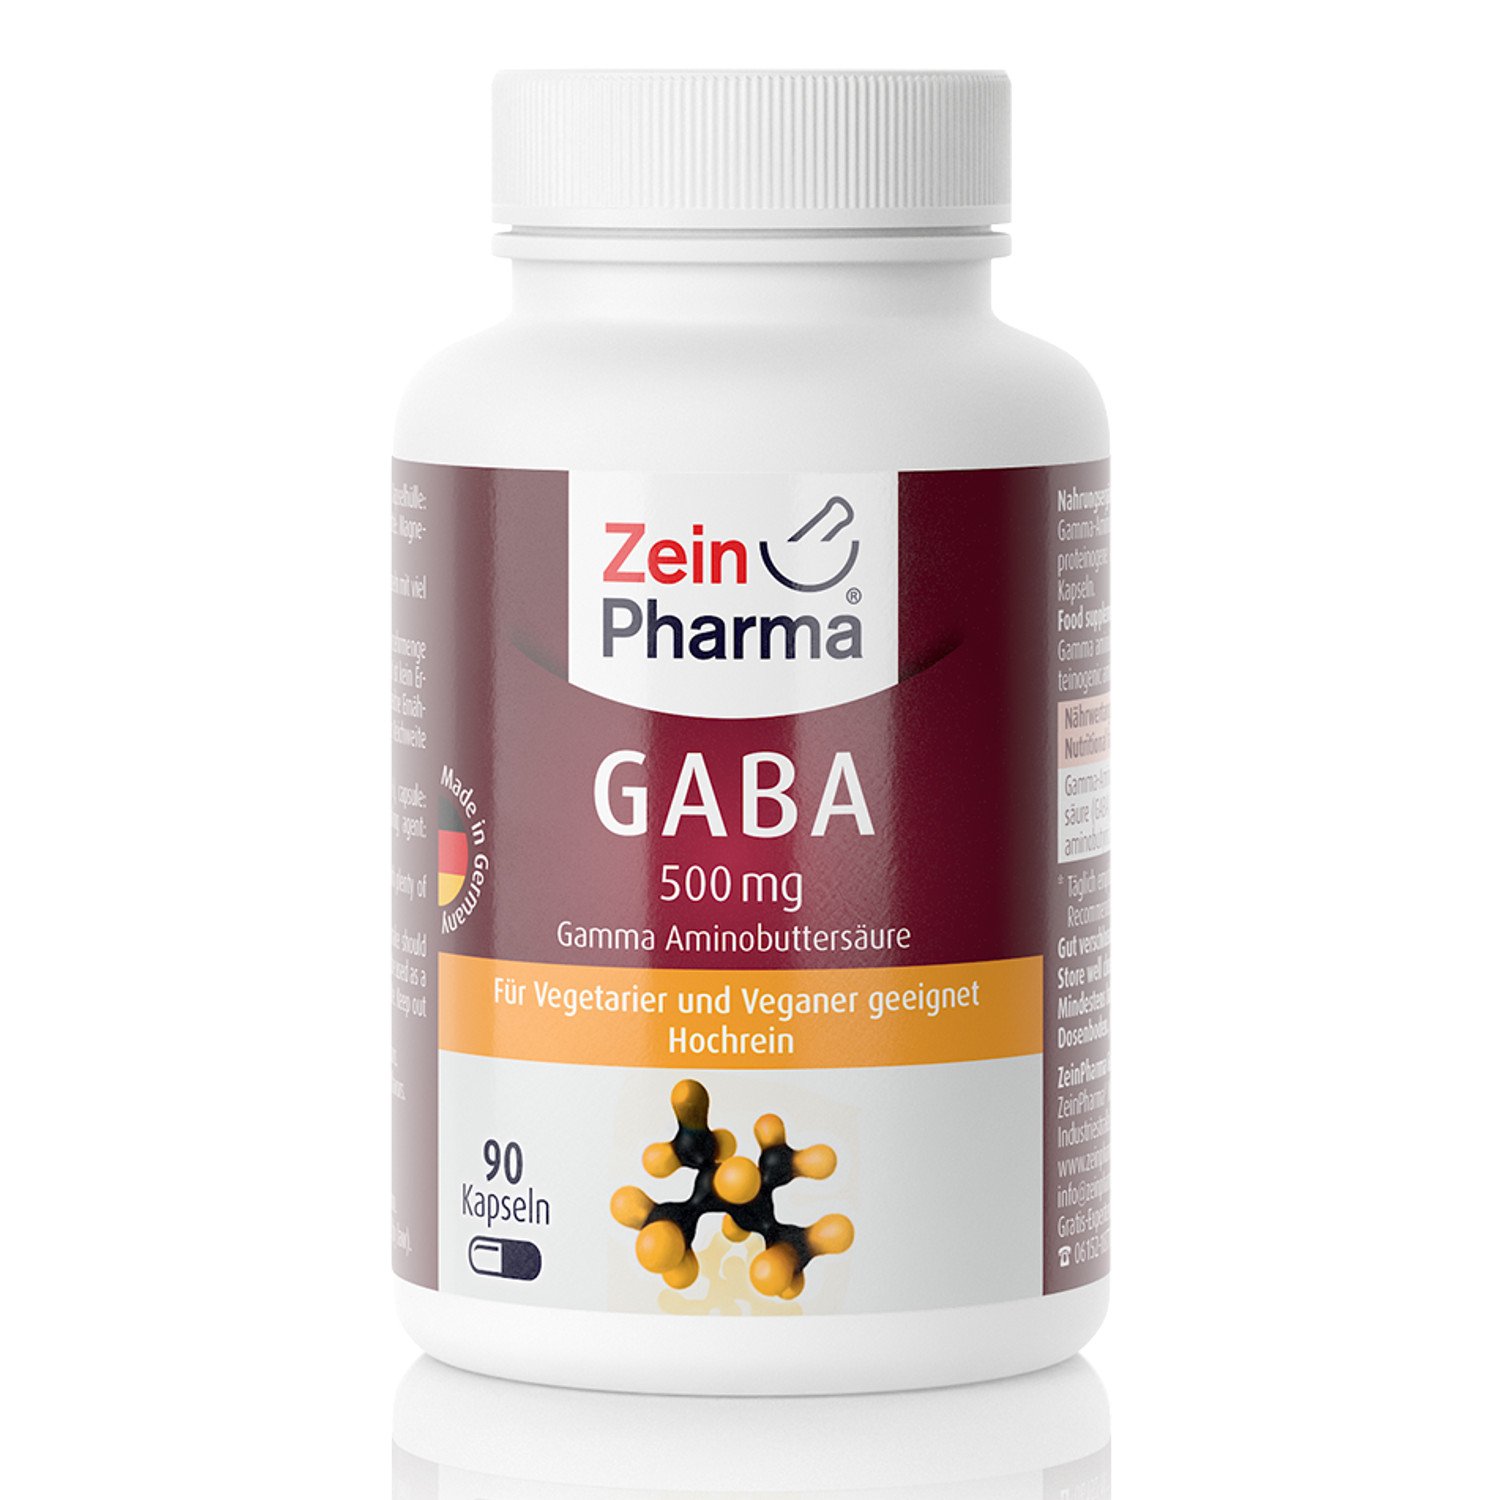 ZeinPharma GABA 500 mg 90 Kapseln, 6 Wochen Vorrat reine Gamma-Aminobuttersäure, 54 g